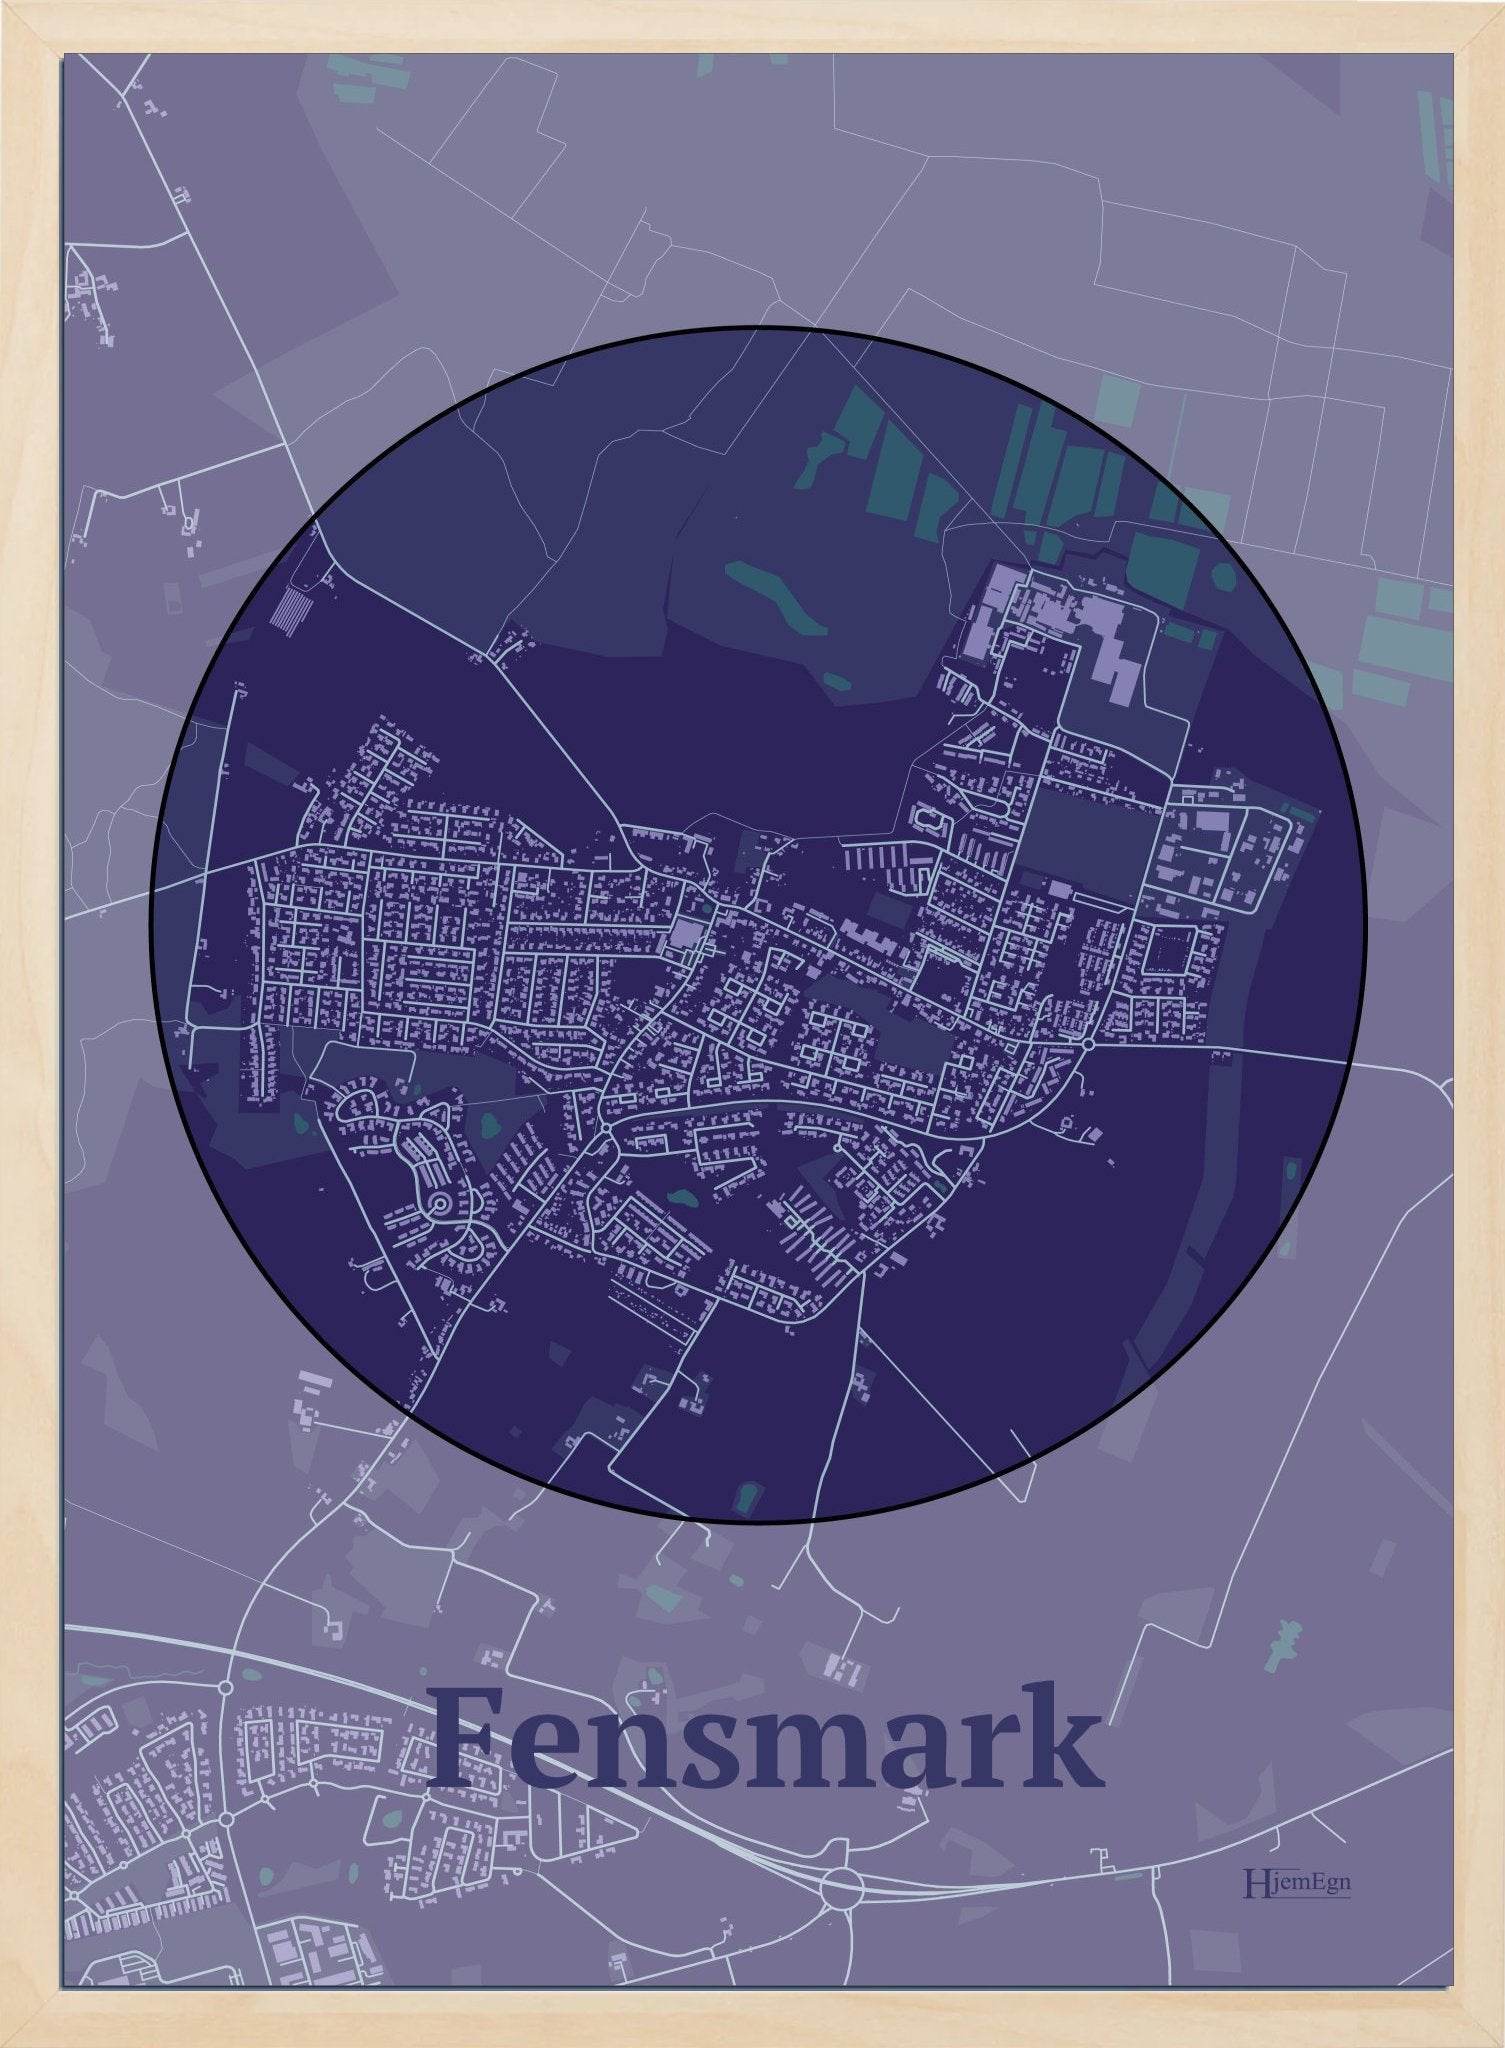 Fensmark plakat i farve mørk lilla og HjemEgn.dk design centrum. Design bykort for Fensmark